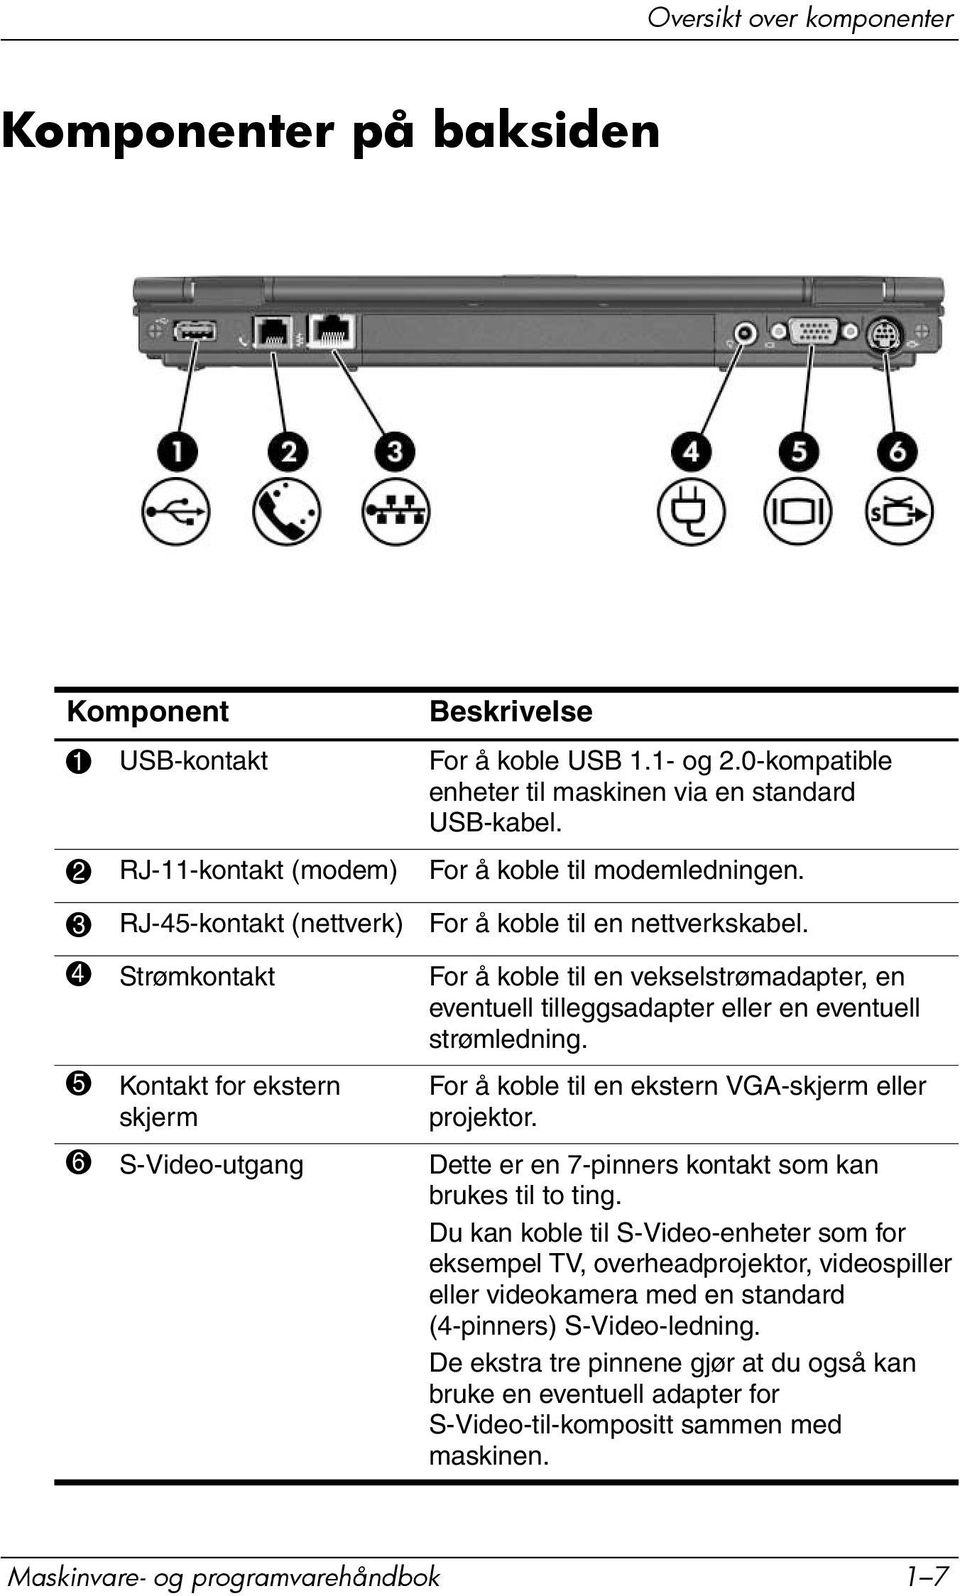 4 Strømkontakt For å koble til en vekselstrømadapter, en eventuell tilleggsadapter eller en eventuell strømledning. 5 Kontakt for ekstern skjerm For å koble til en ekstern VGA-skjerm eller projektor.